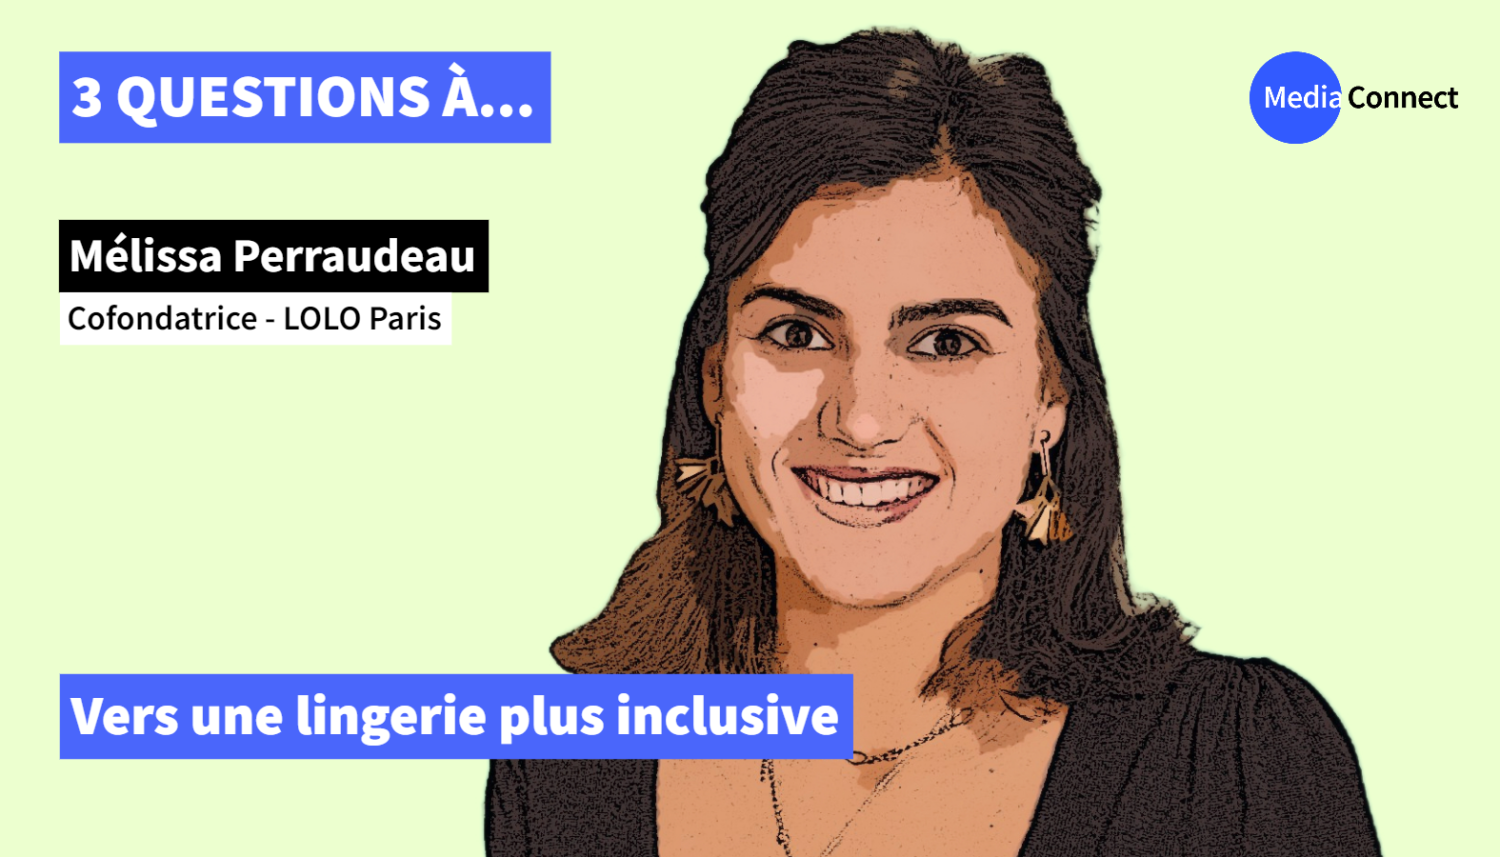 3 QUESTIONS À - Épisode #9 - Mélissa Perraudeau - LOLO Paris - Vers une lingerie plus inclusive